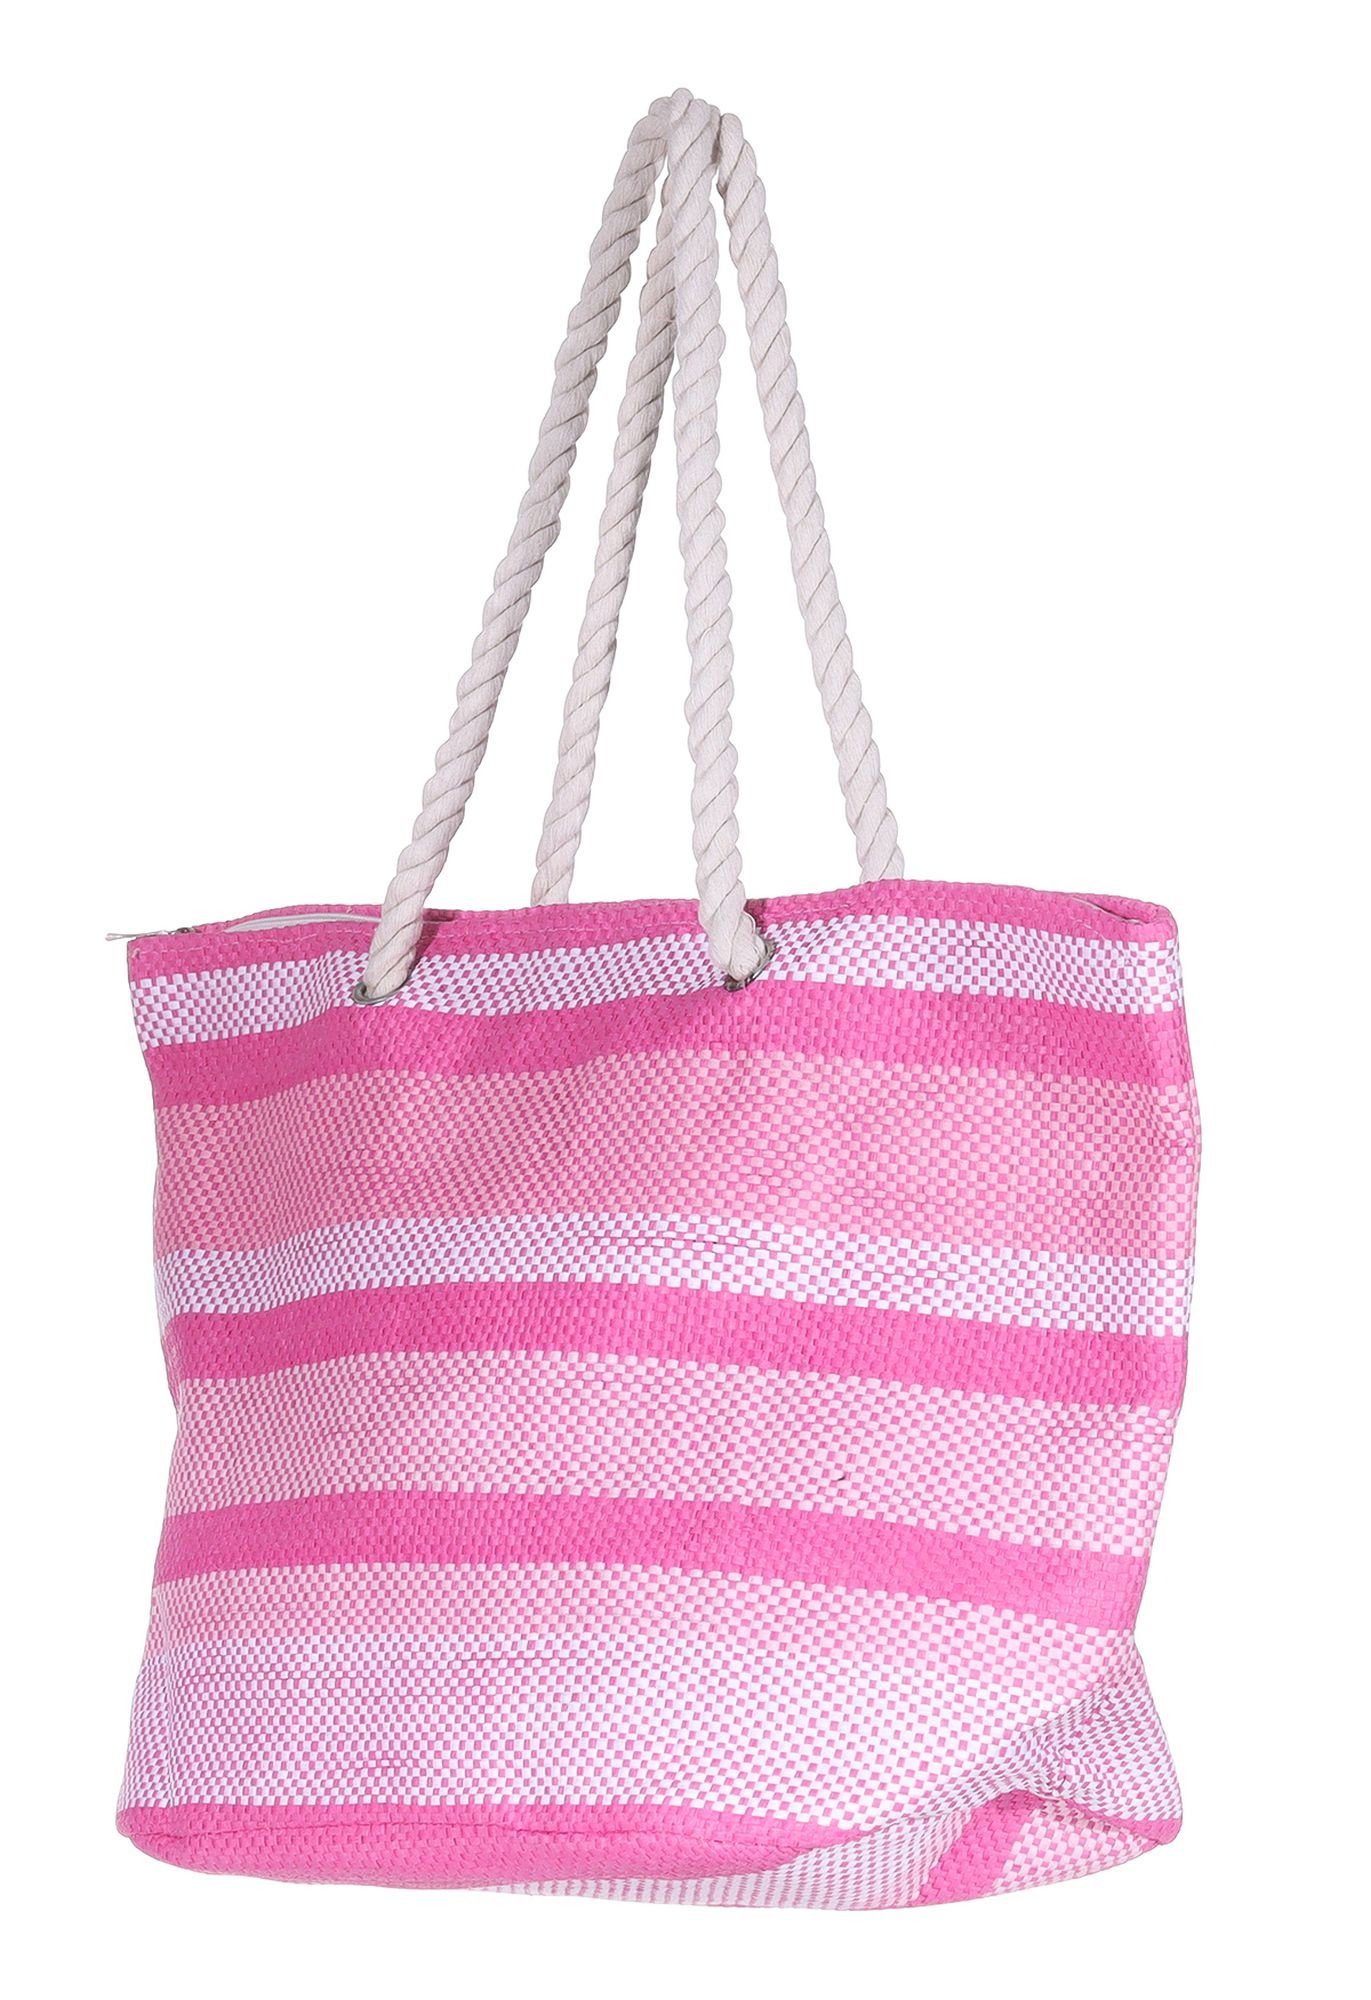 Markenwarenshop-Style Shopper Silkroda - Tasche Pink Rosa Weiß gestreift Strandtasche Badetasche